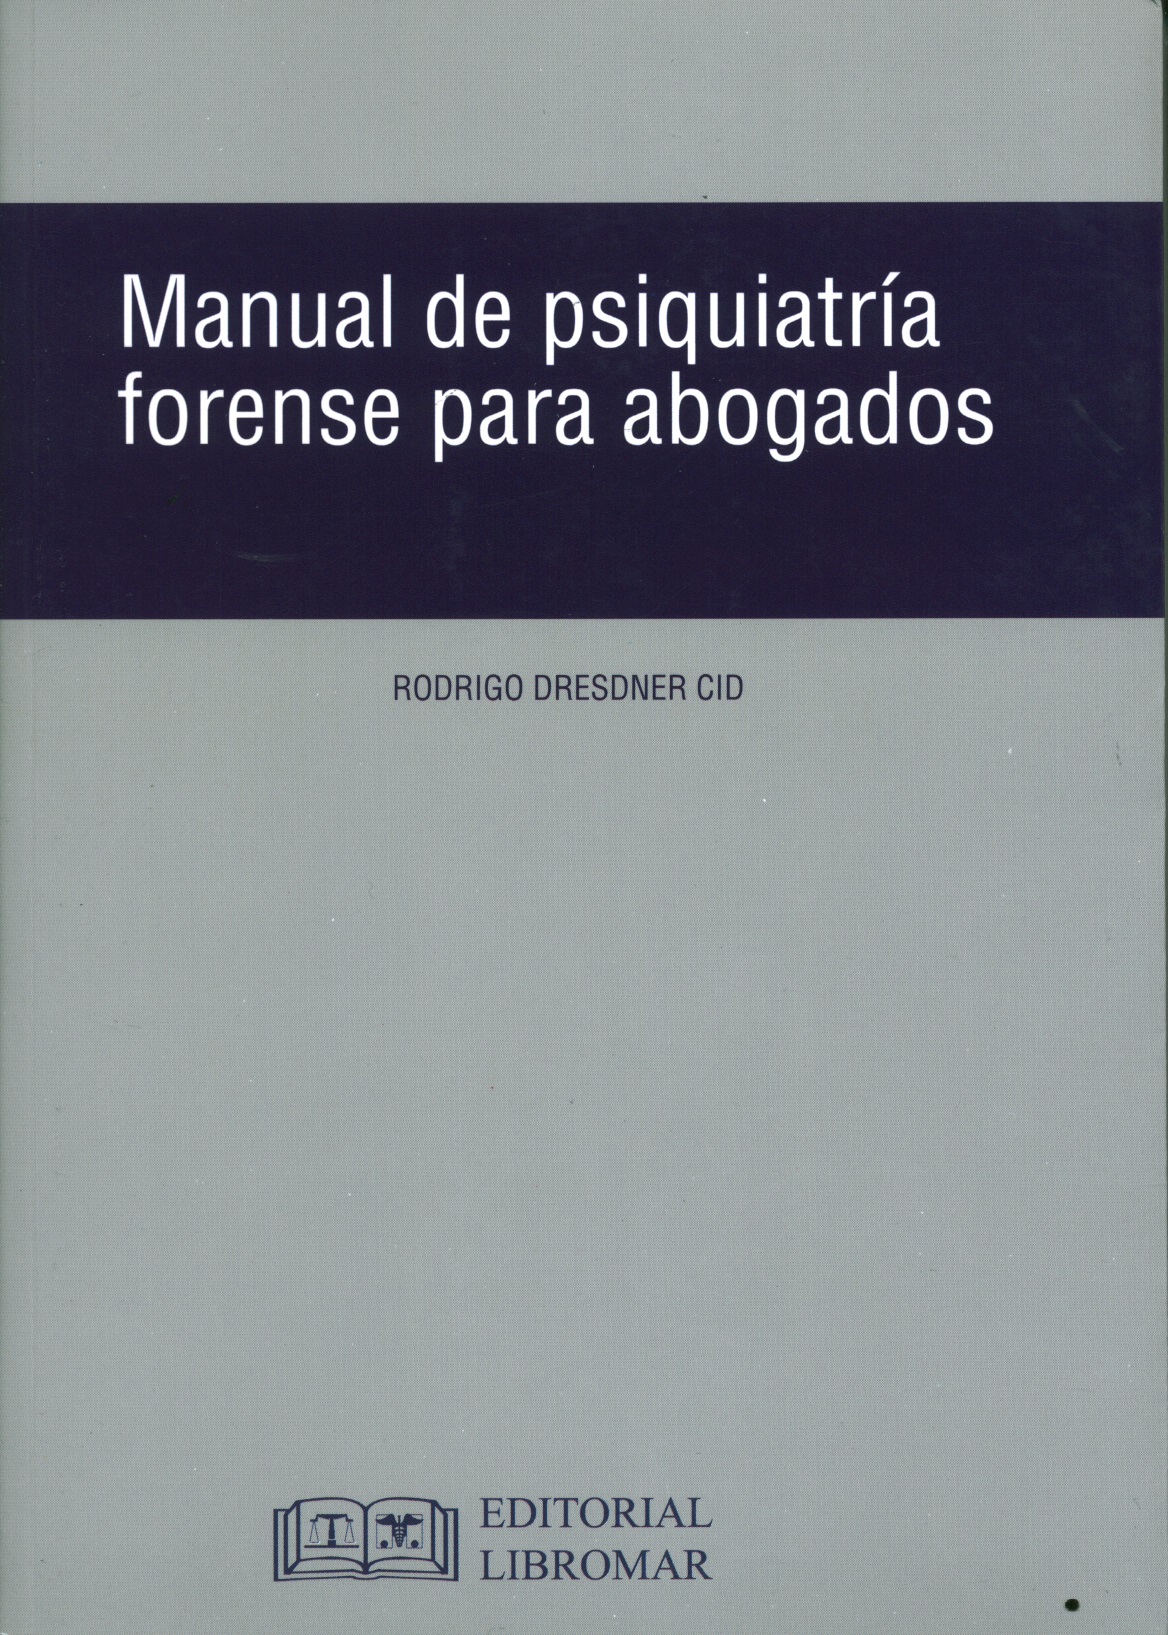 Manual de psiquiatria forense para abogados